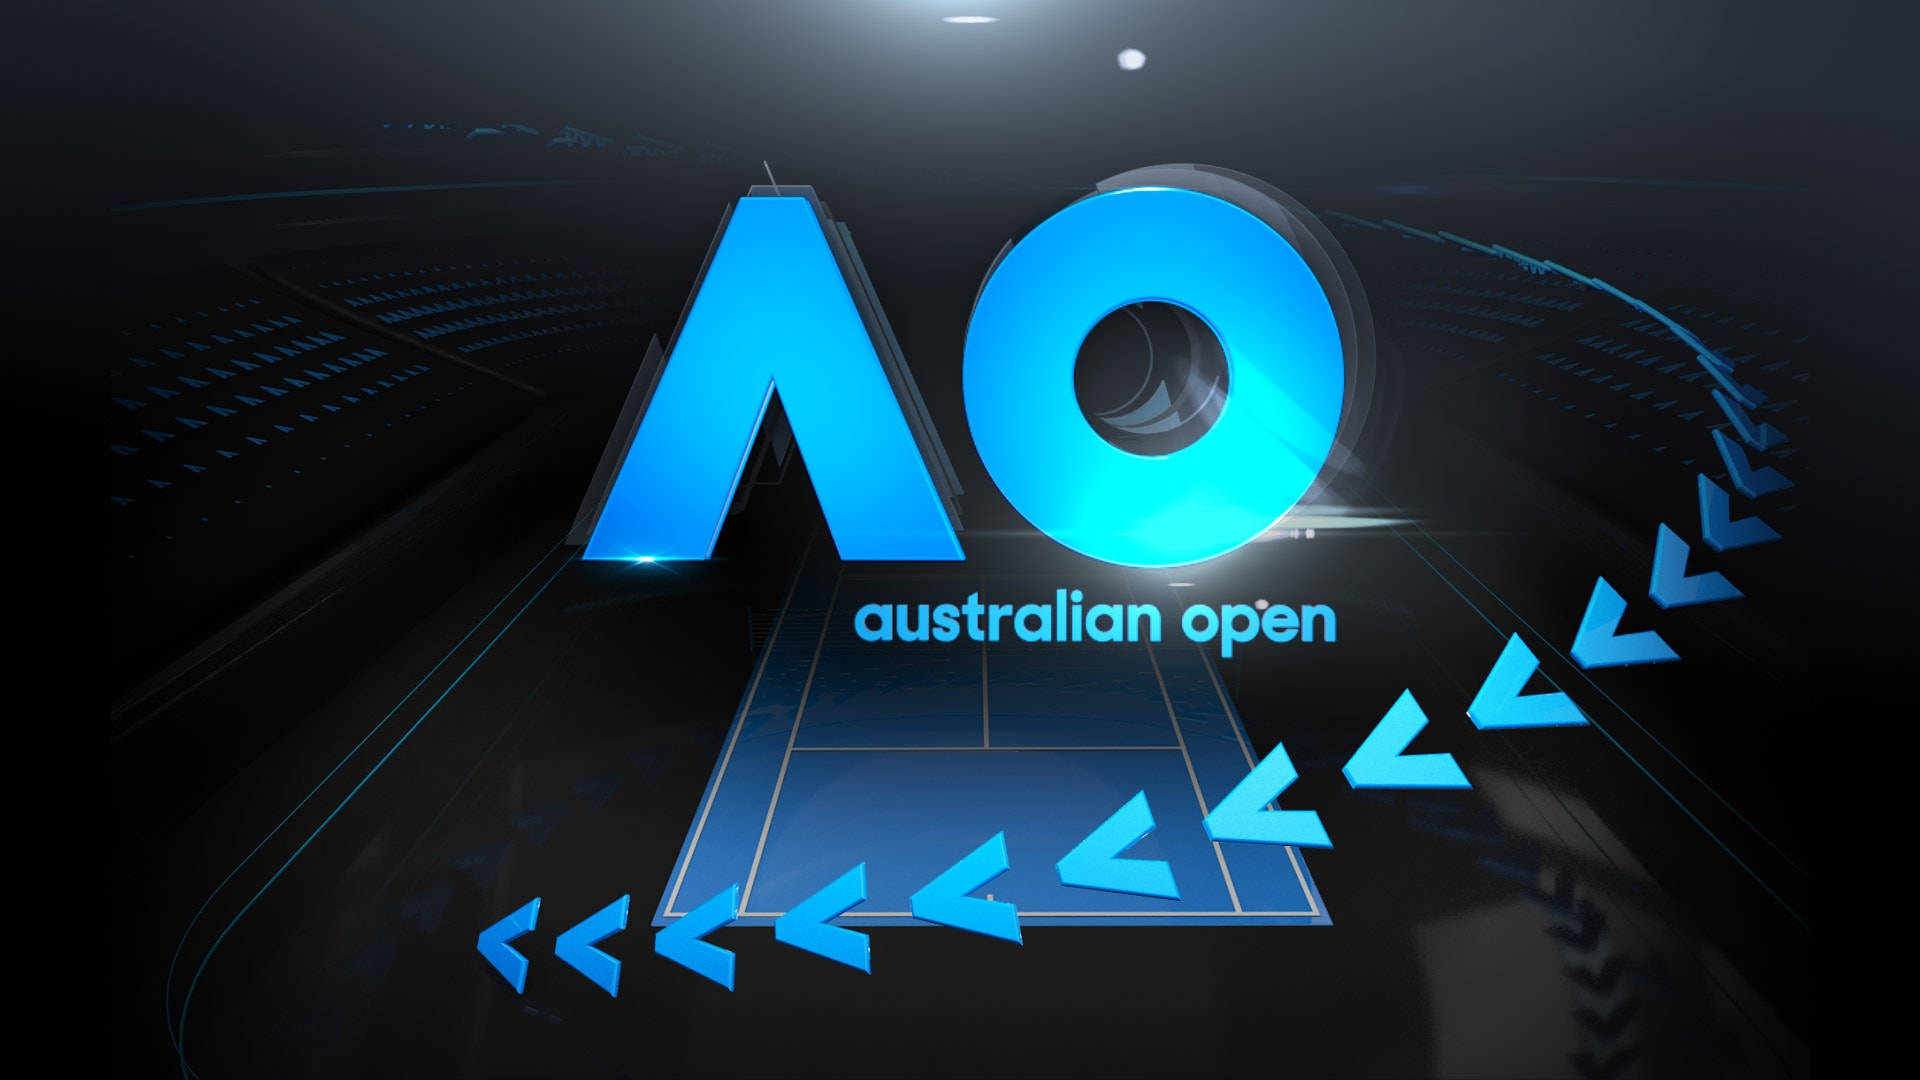 Australian Open Stylized Logo Background